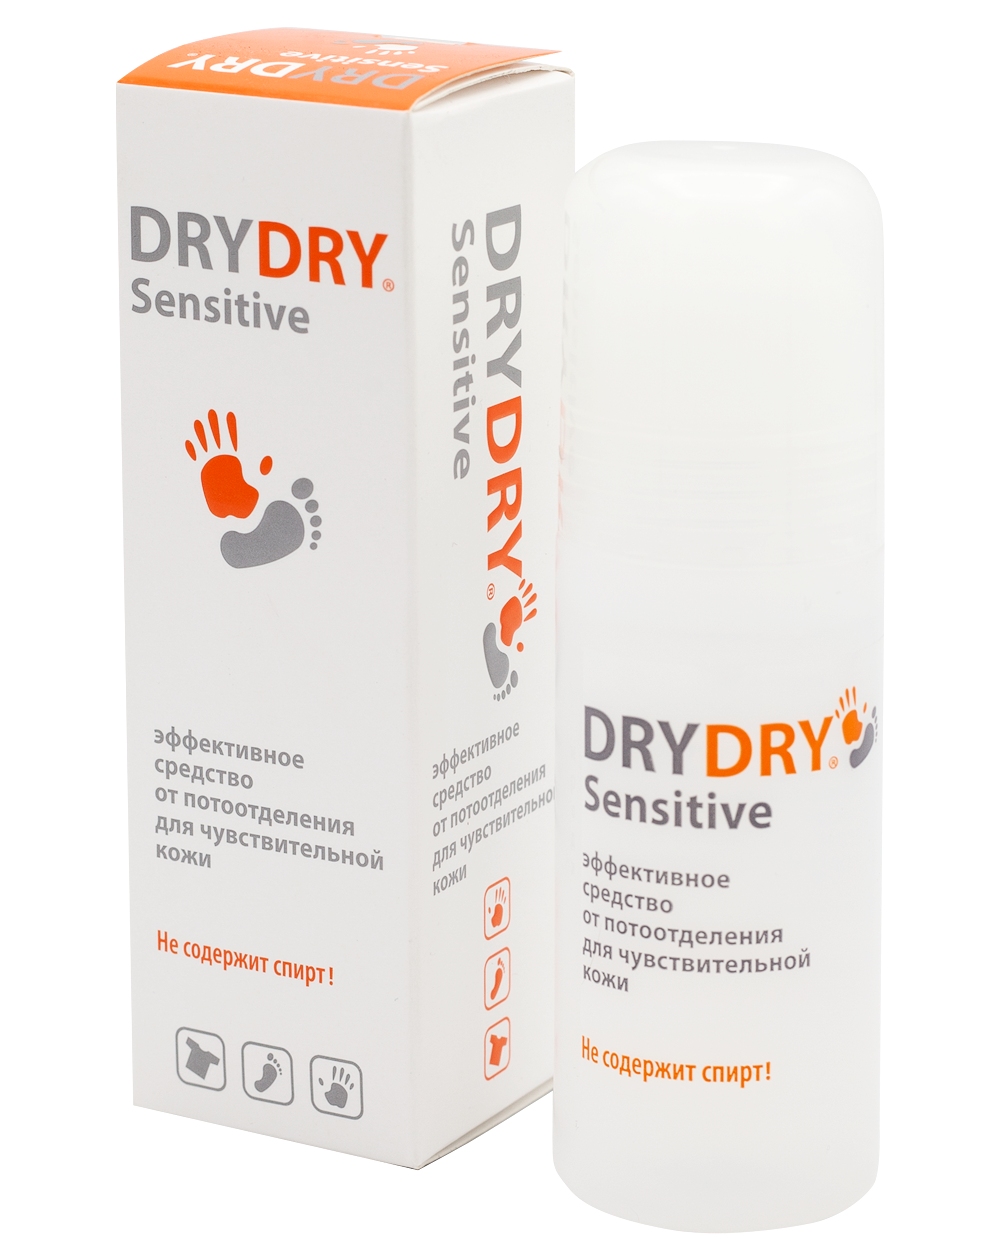 Драй драй Сенситив 50 мл. Dry Dry sensitive дезодорант. Средства драй драй для подмышек. Дезодорант от пота в аптеке Dry Dry.